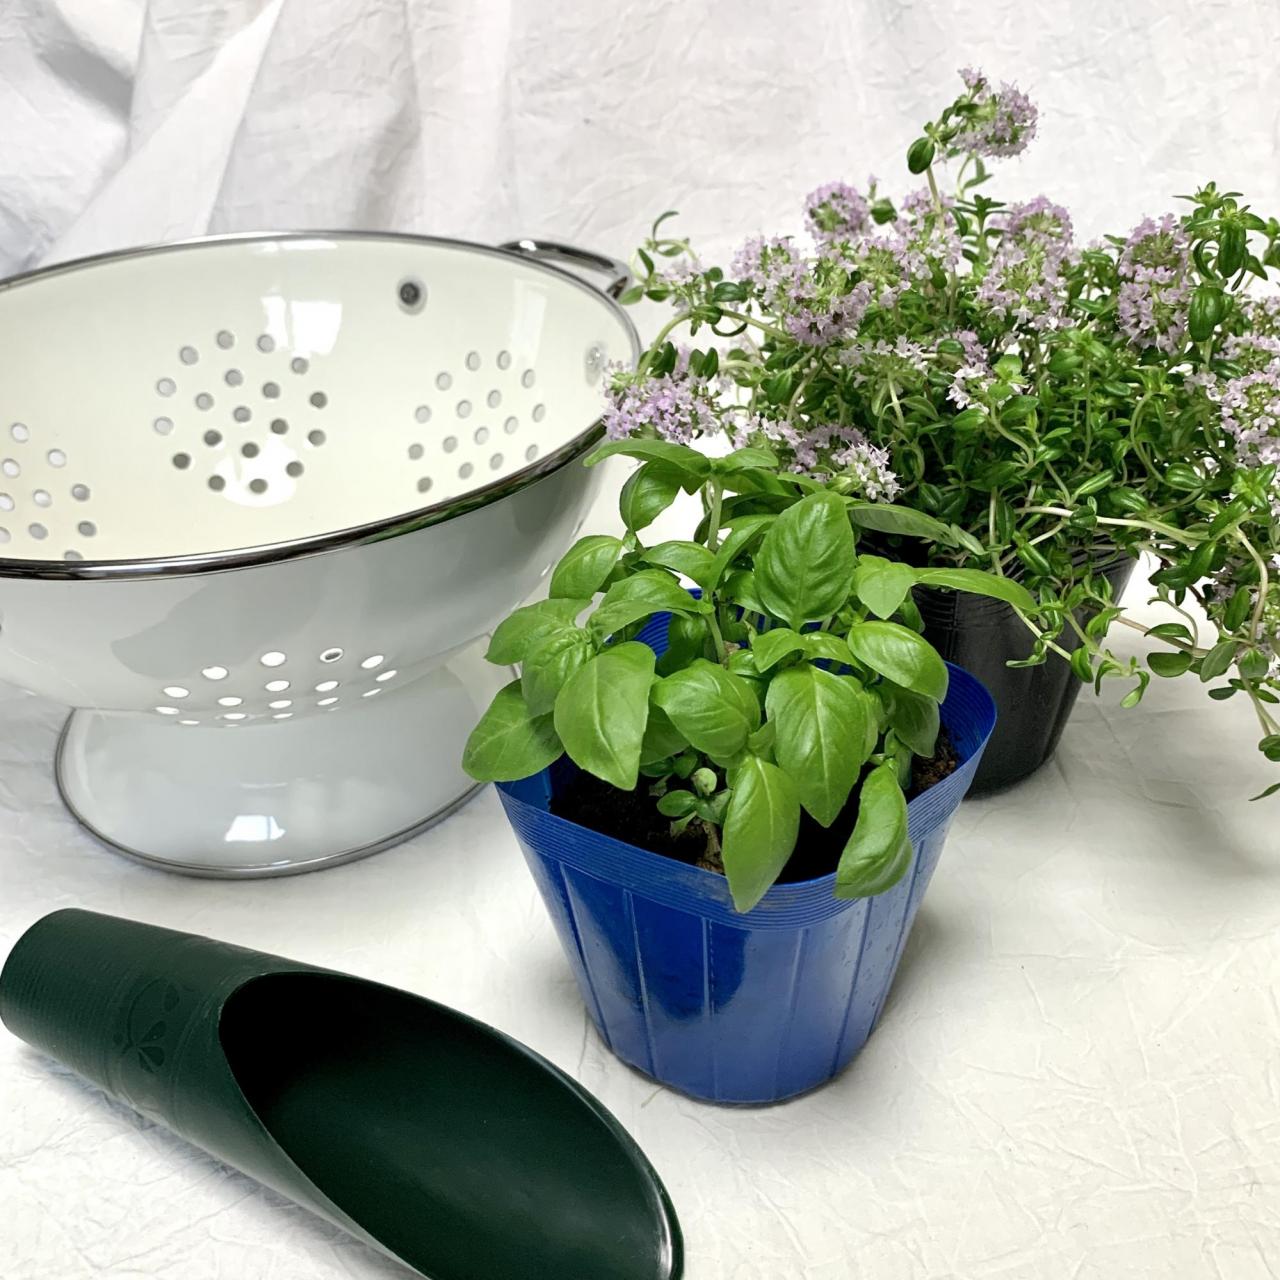 家庭菜園におすすめ 料理に使える キッチンハーブ 寄せ植えのやり方 育てやすい4選 1 3 ハピママ